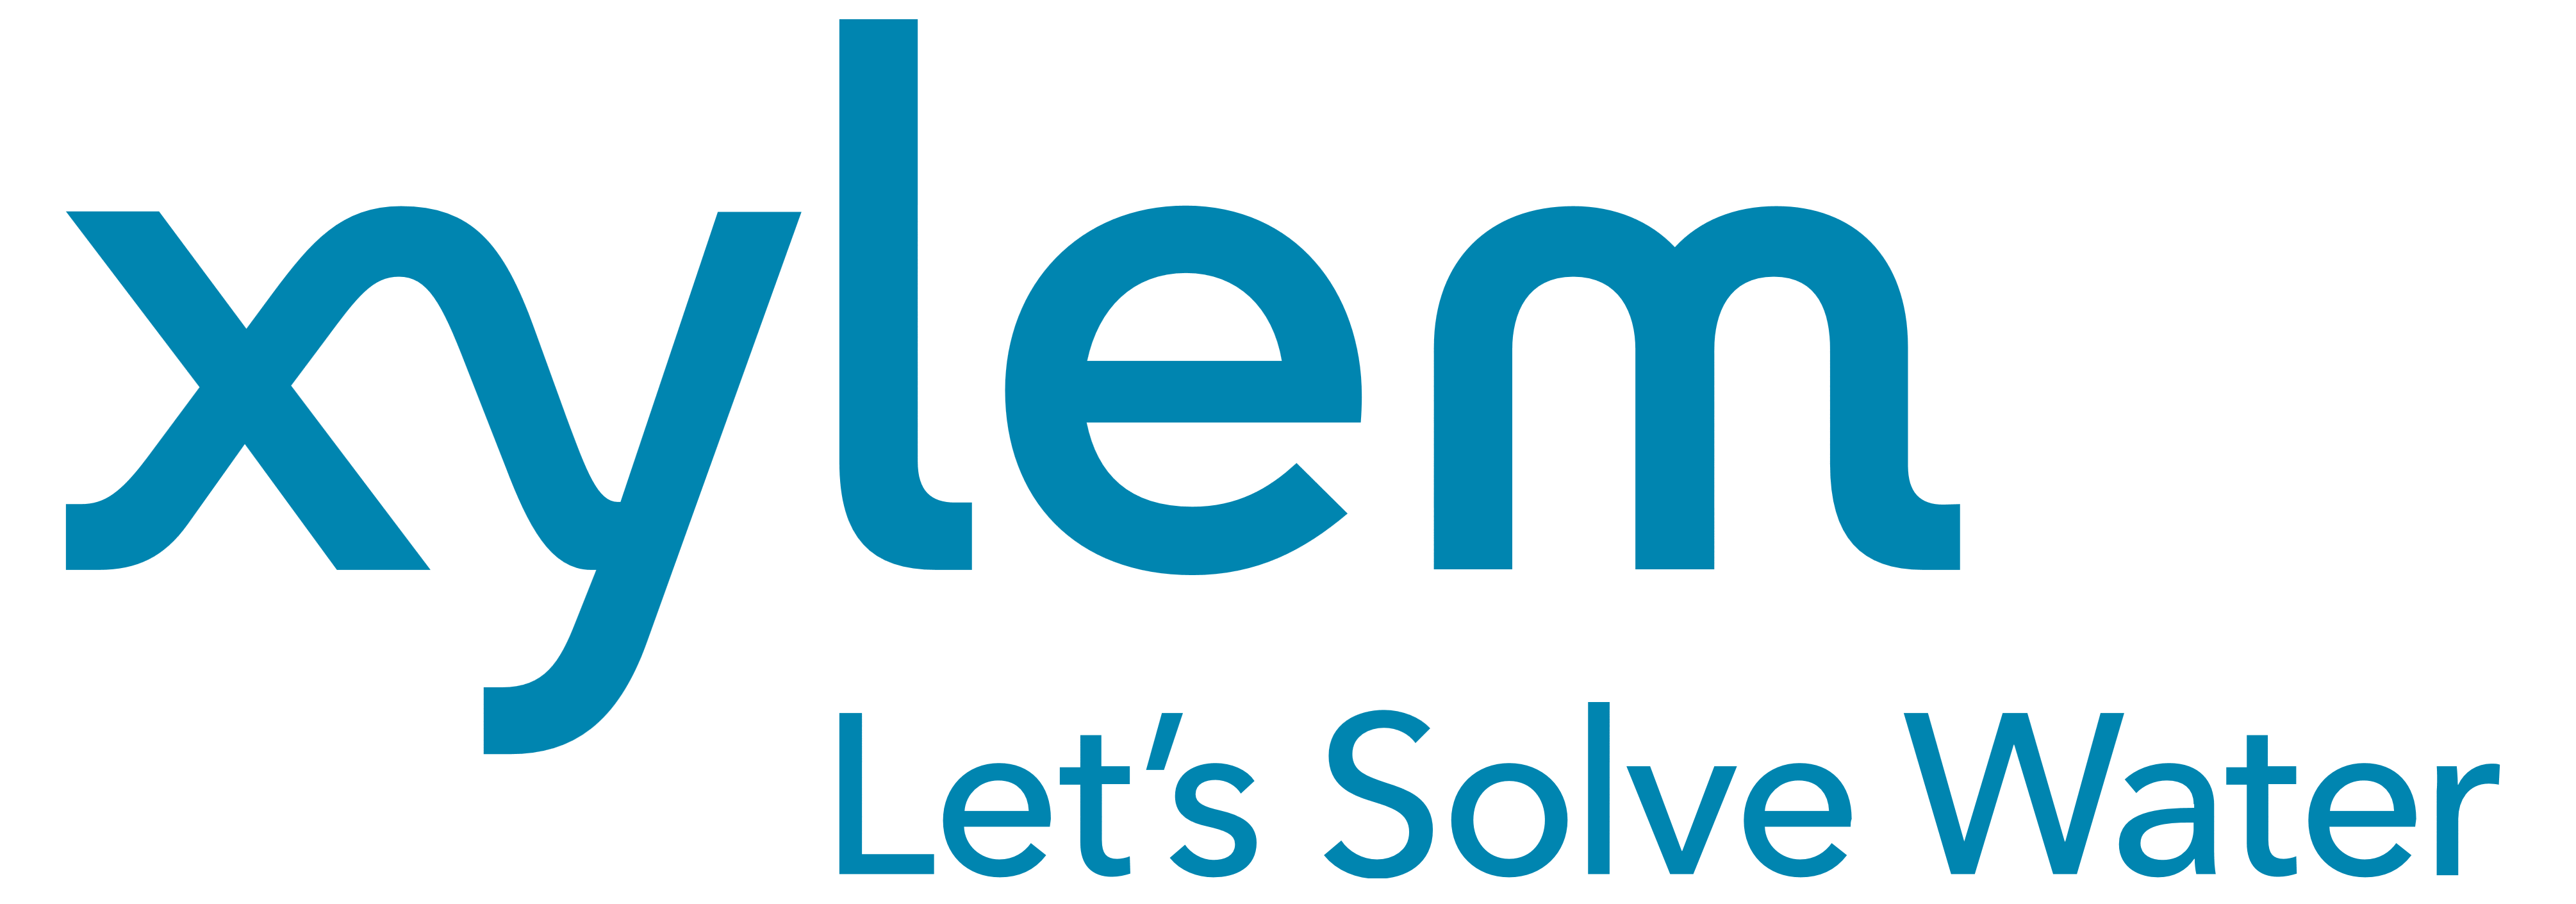 Xylem Logo - Xylem